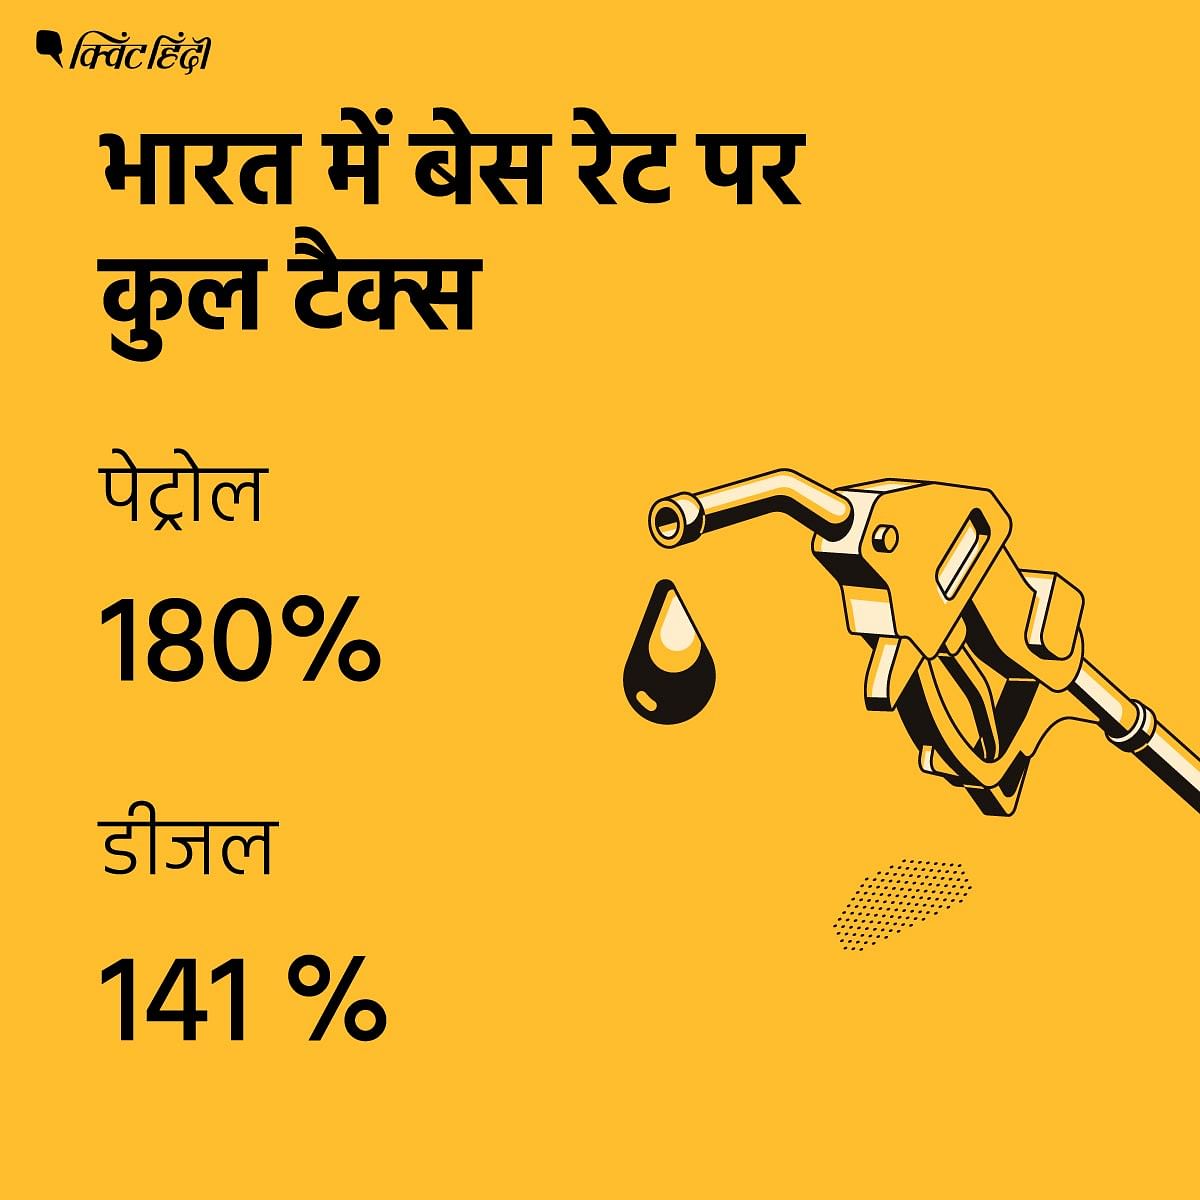 सरकार पेट्रोल के बेस रेट पर करीब 180% और डीजल पर 141% टैक्स वसूल रही है